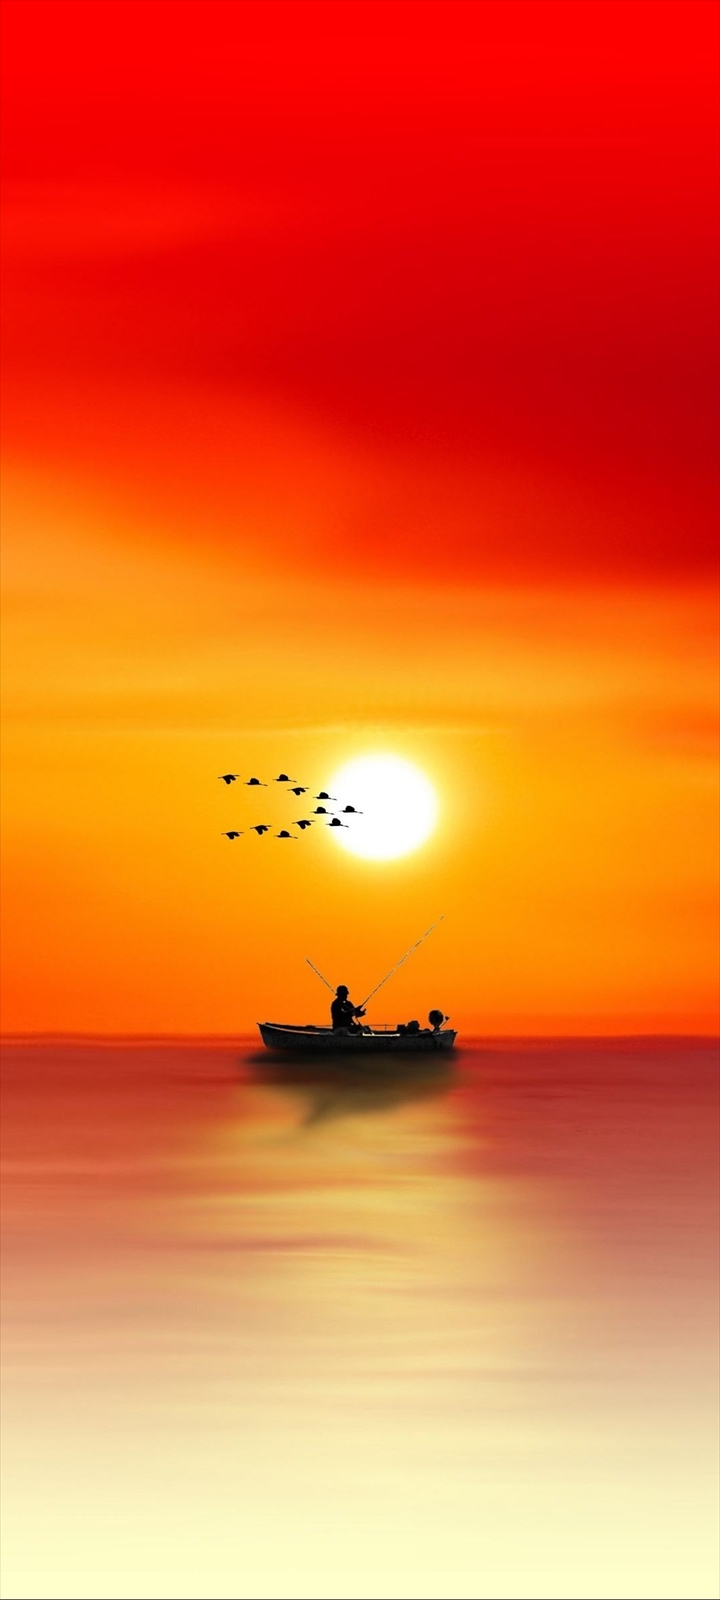 ボートで釣りをする人と渡り鳥と夕日 Moto G9 Play Androidスマホ壁紙 待ち受け スマラン